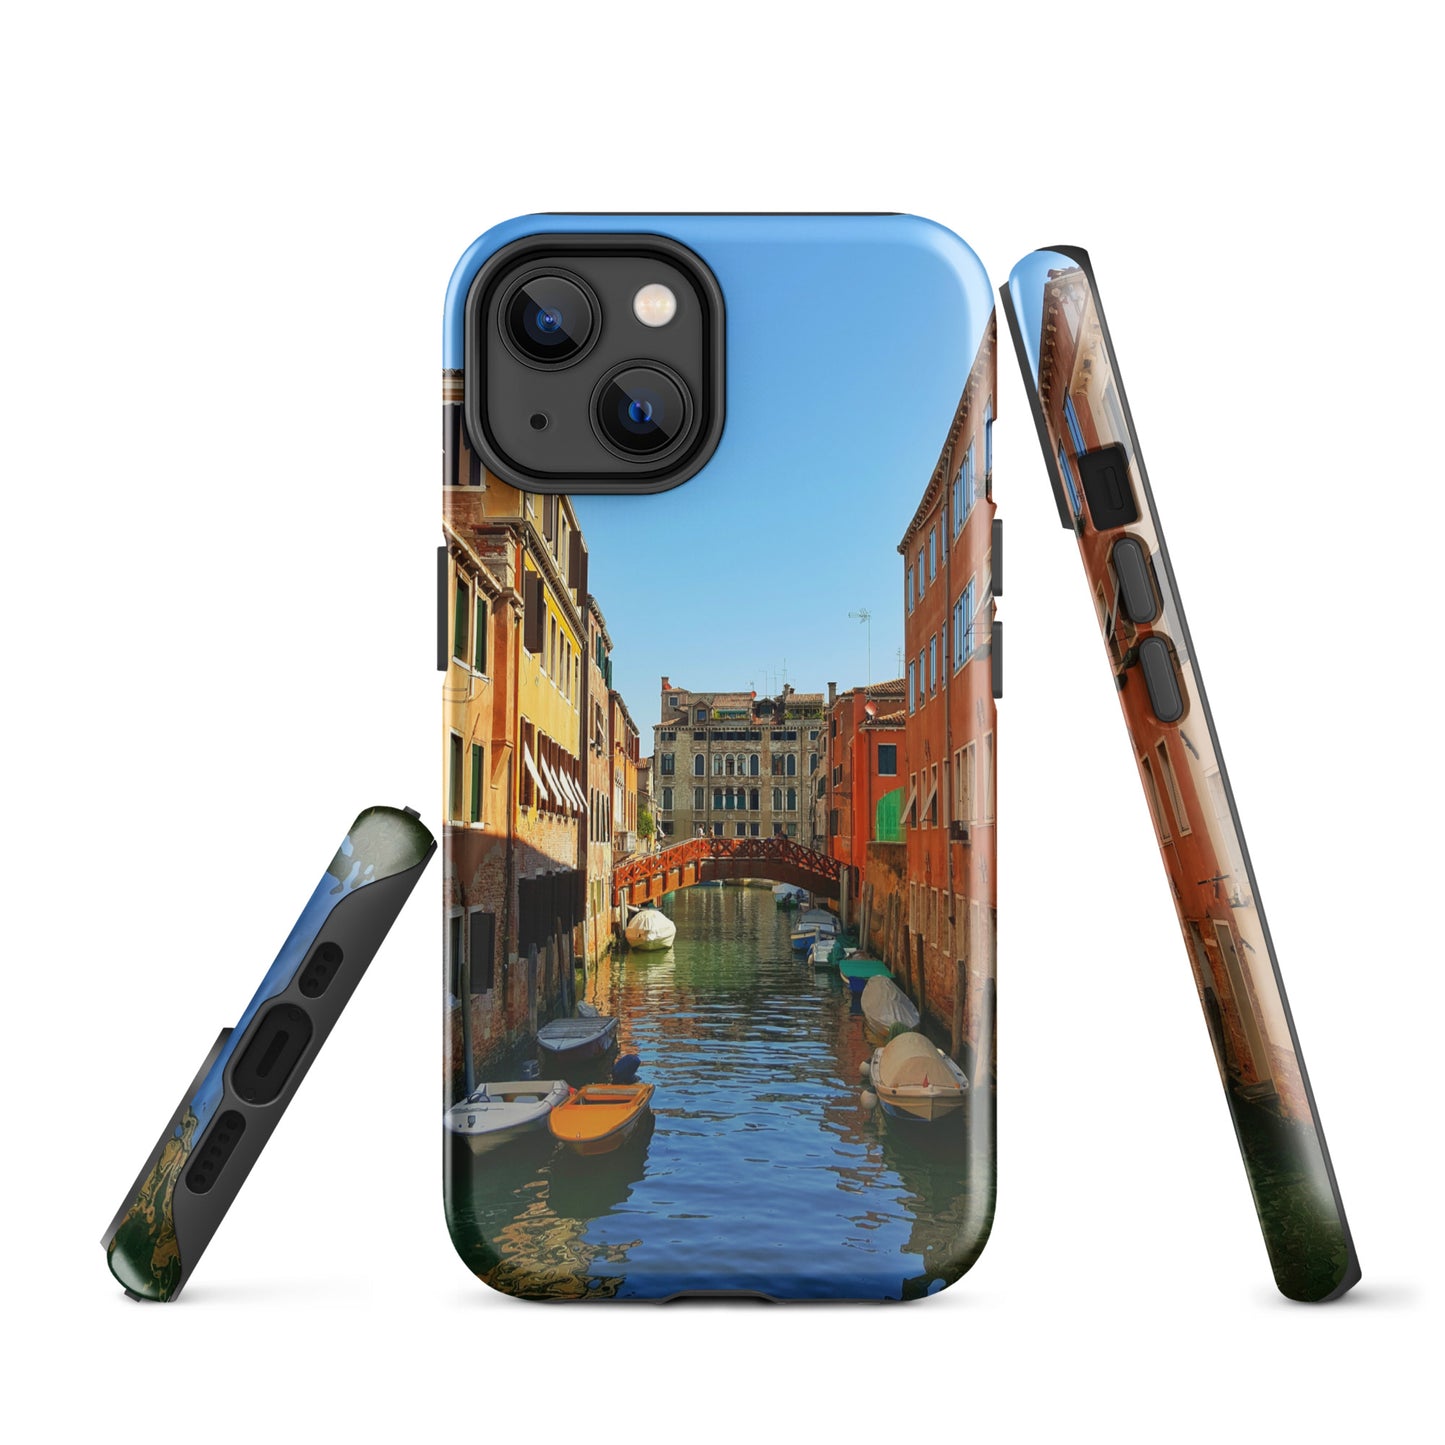 Estuche resistente Venice View para iPhone®: protección resistente con un paisaje urbano impresionante"